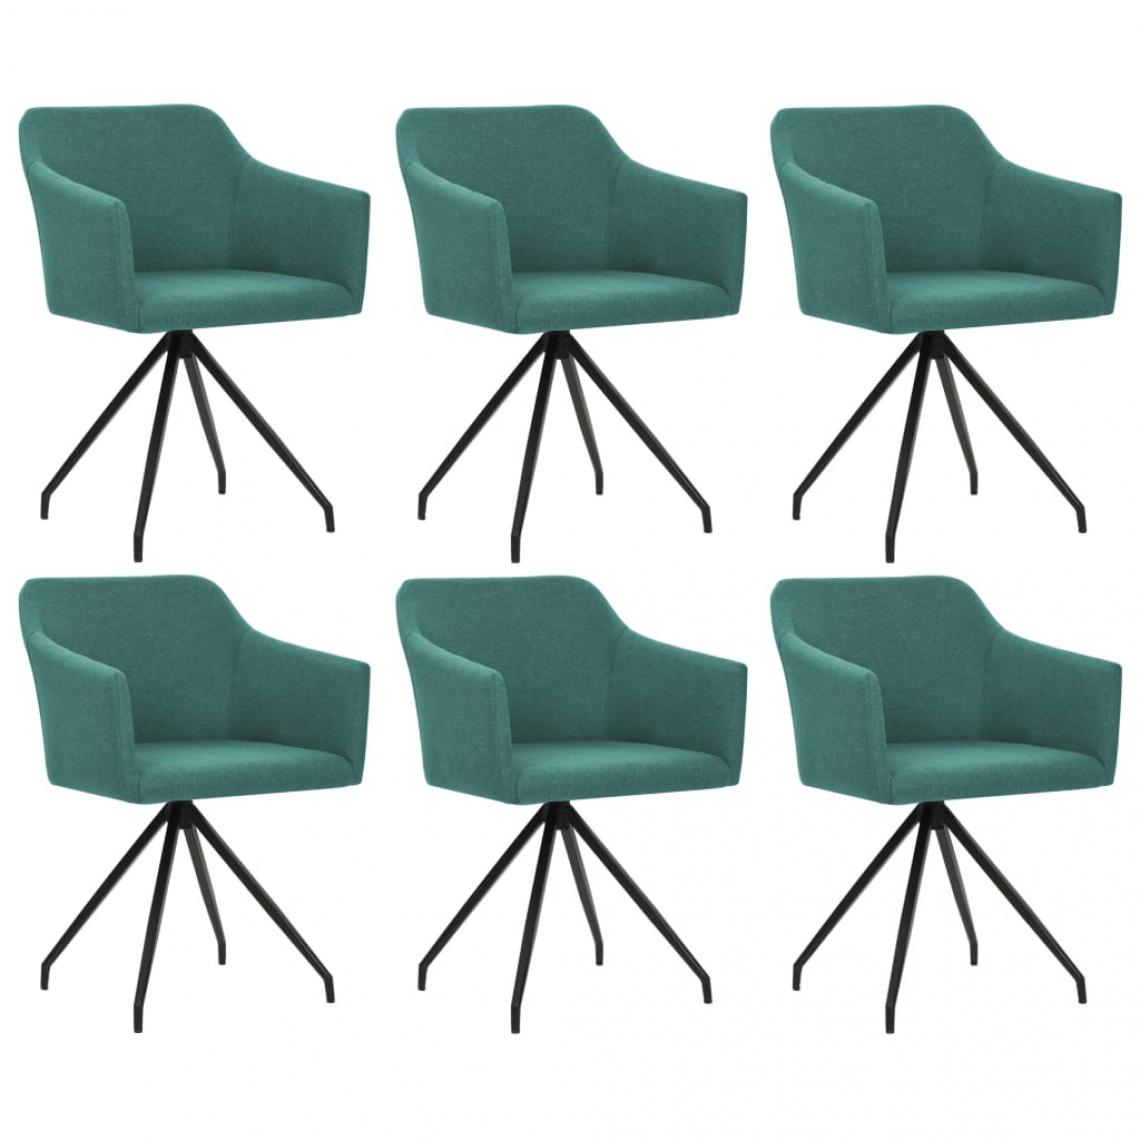 Decoshop26 - Lot de 6 chaises de salle à manger cuisine design moderne tissu vert CDS022901 - Chaises